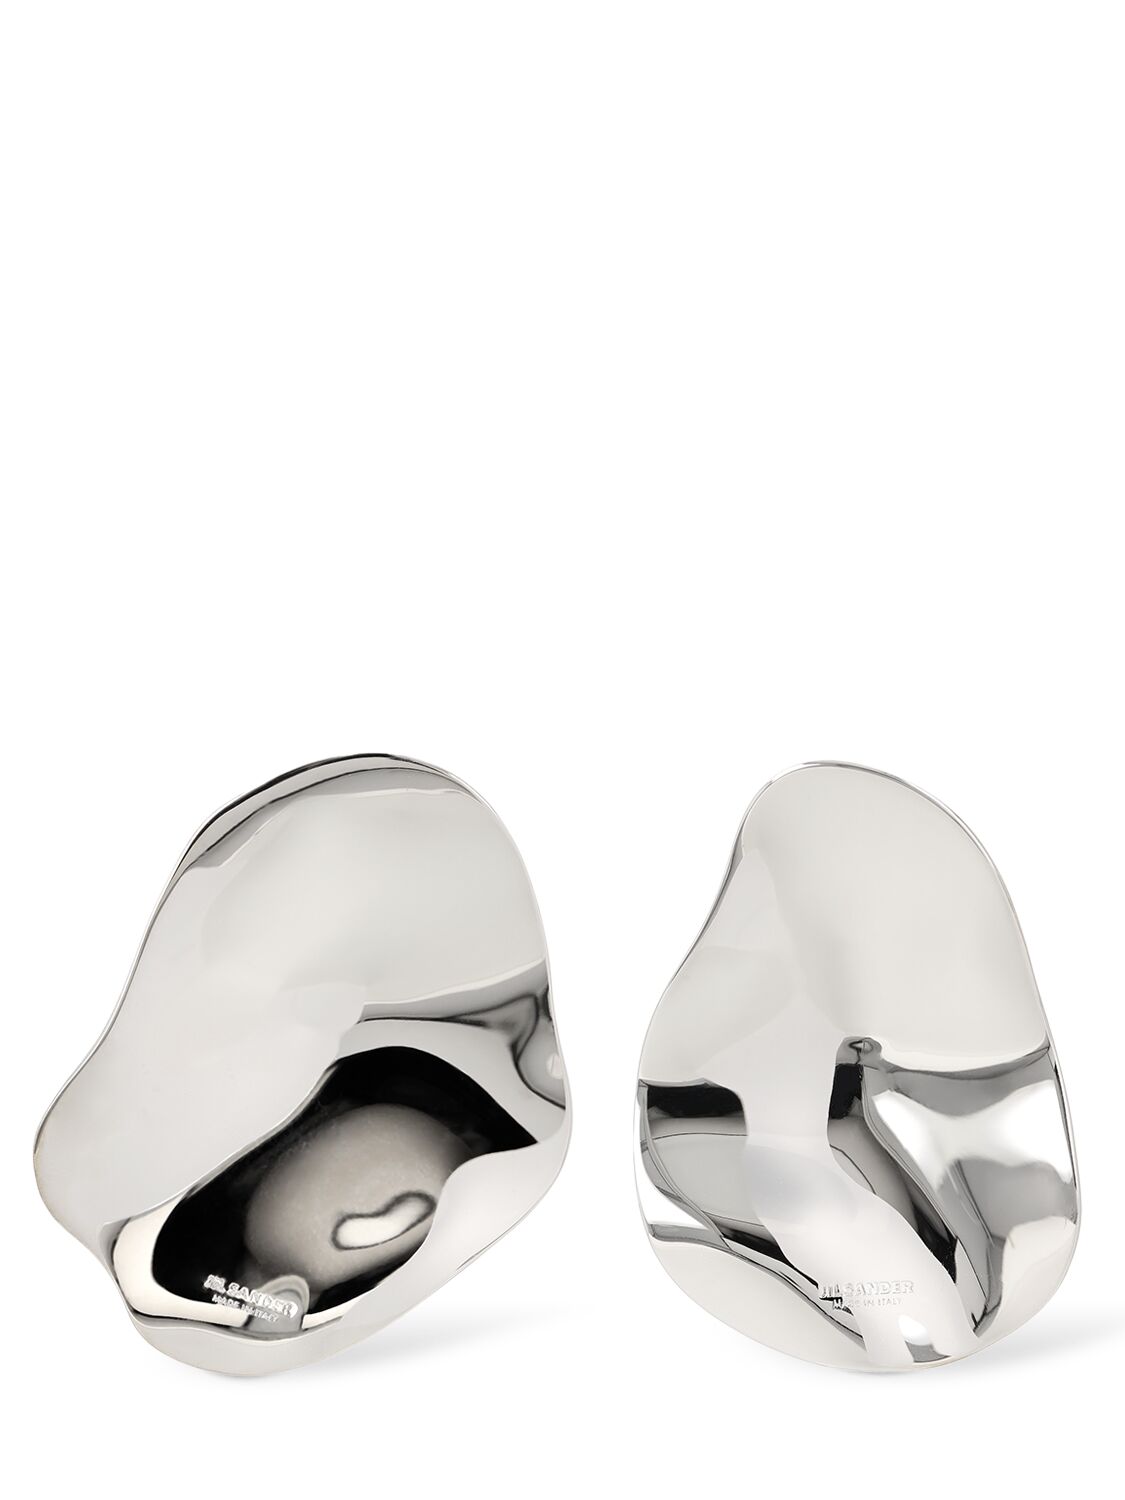 Jil Sander Cw4 3 Stud Earrings In Silver